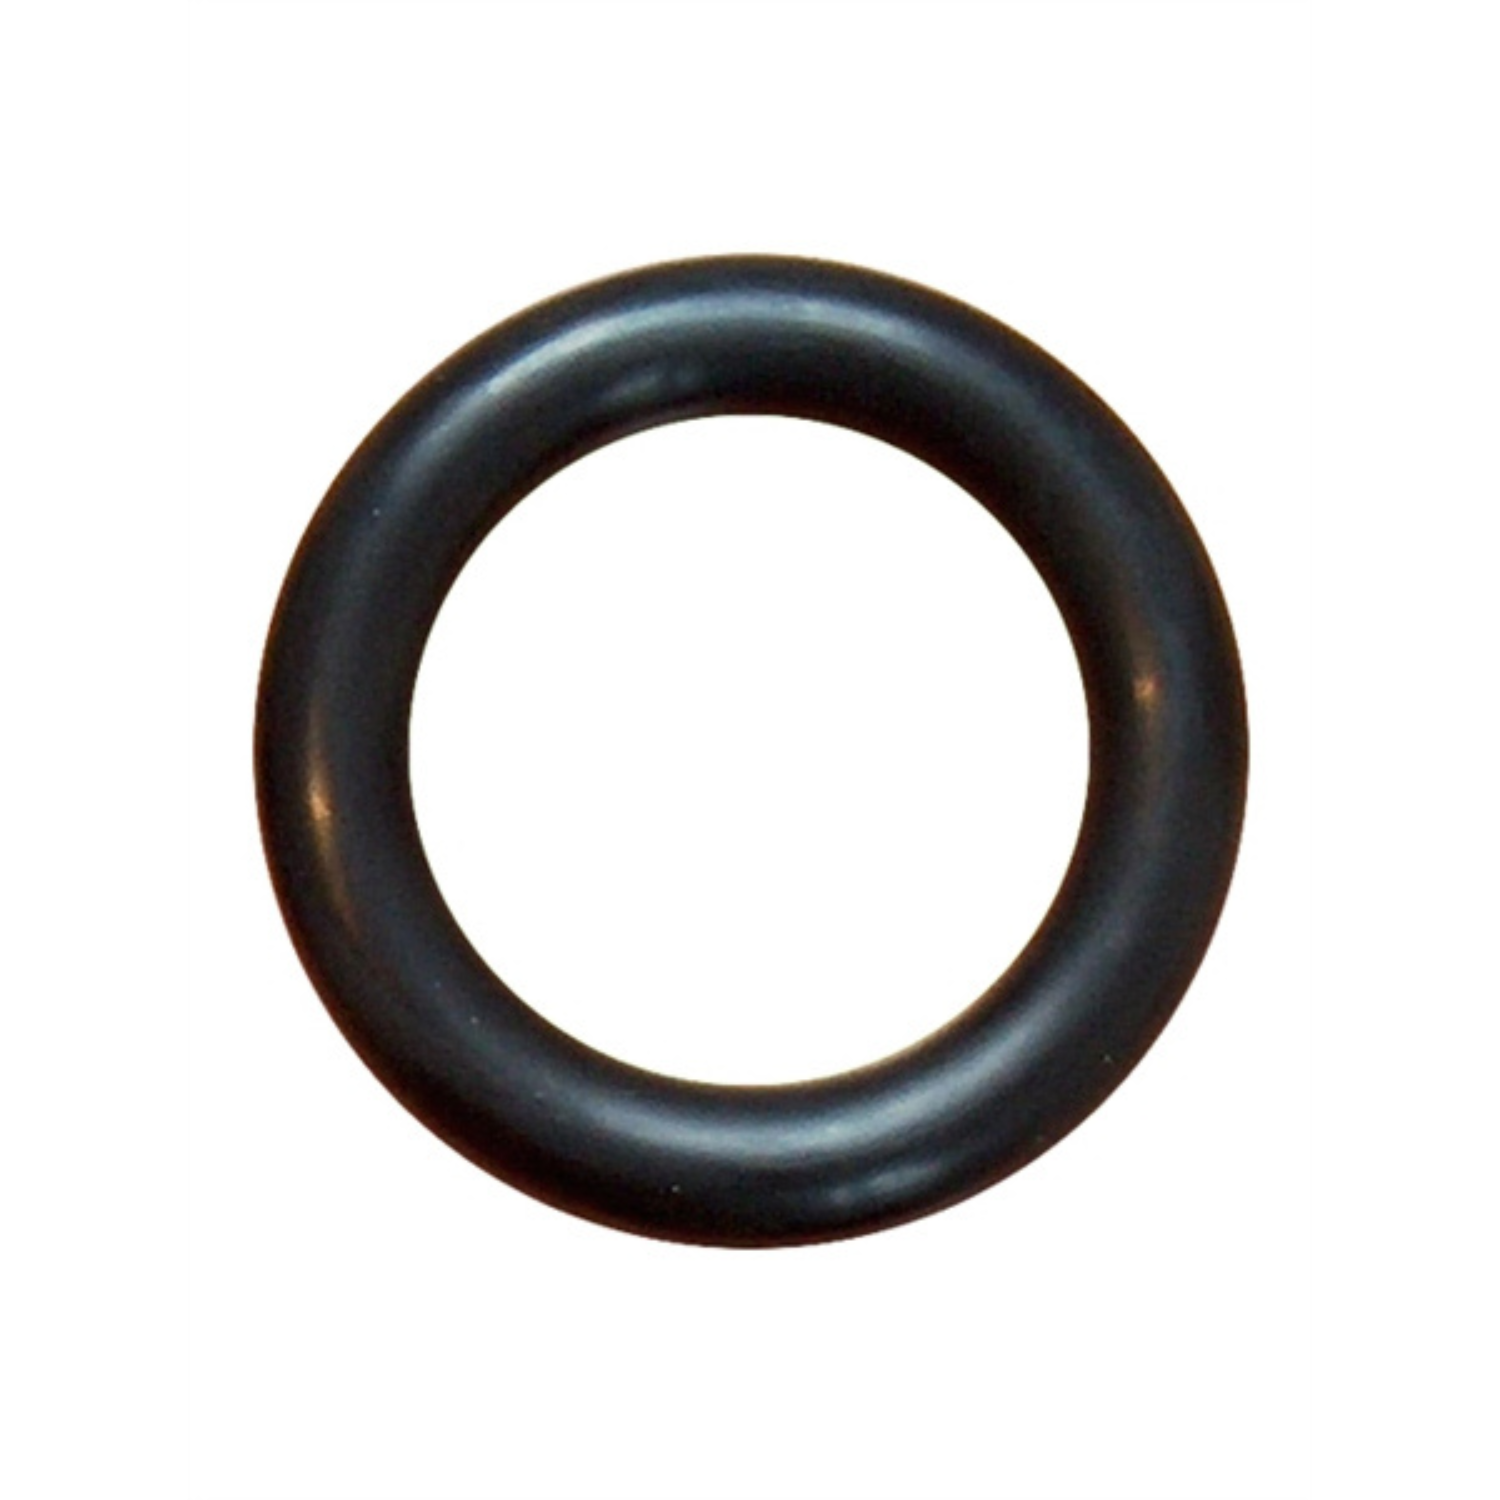 Dikke zwarte cockring met een diameter van 45 mm. Ontworpen door Mister B voor gay mannen en te koop bij Flavourez.